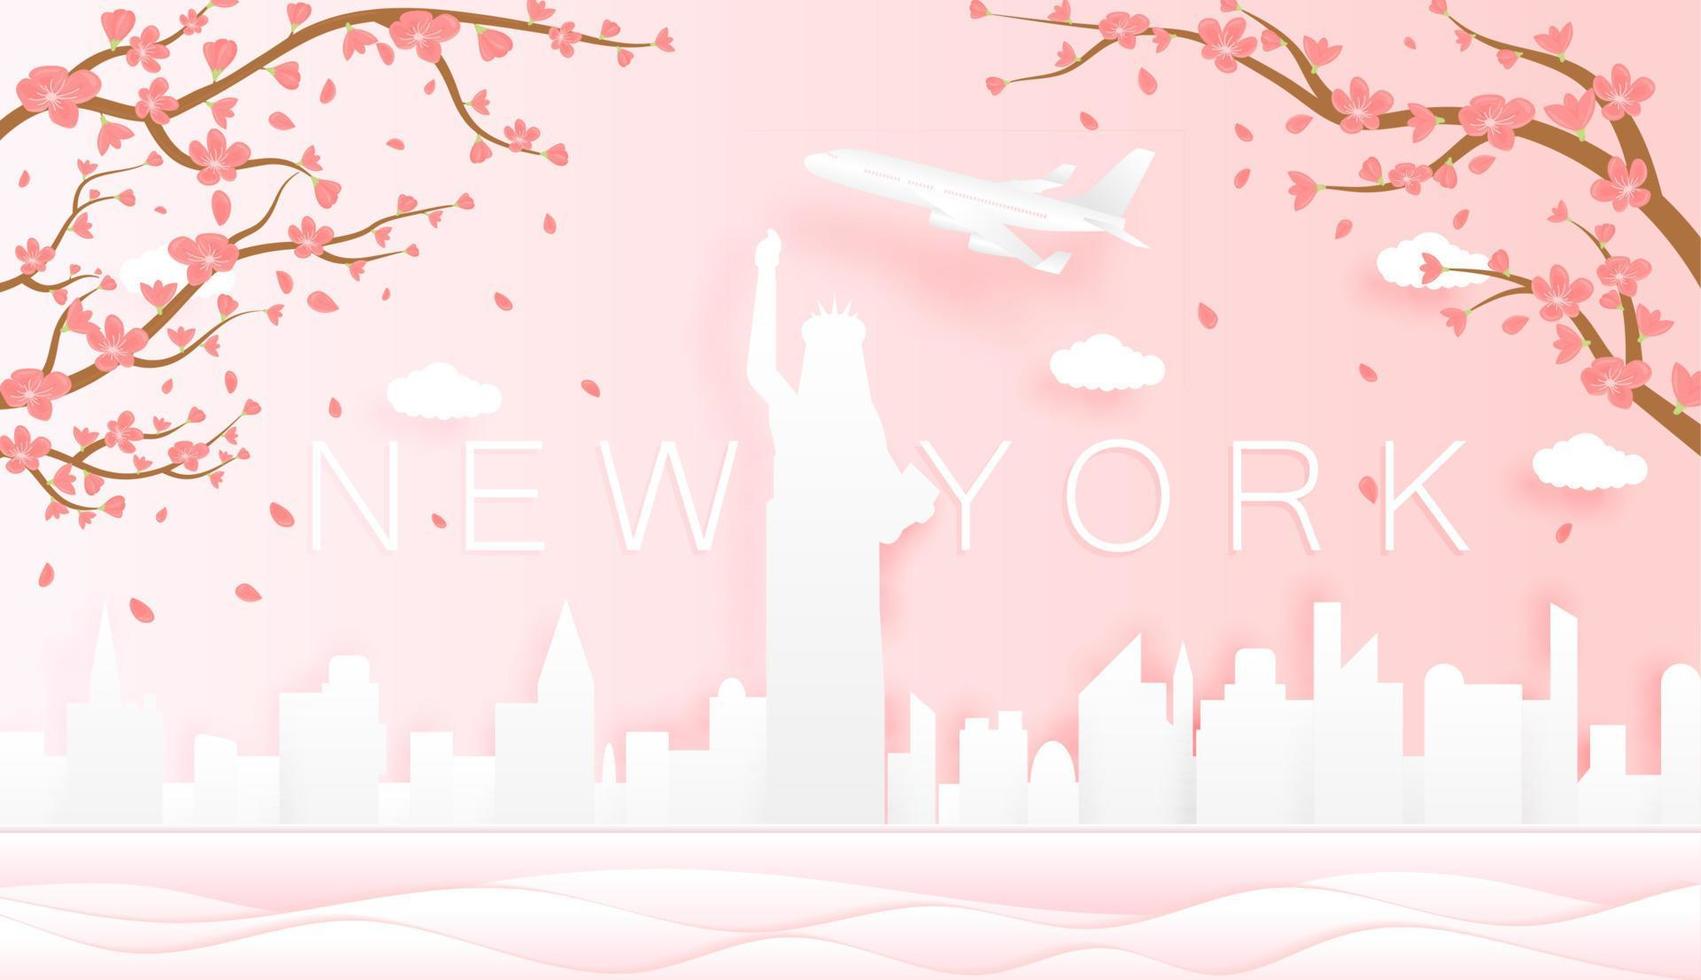 panorama resa vykort, affisch, Turné reklam av värld känd landmärken av ny york, vår säsong med blomning blommor i träd i papper skära stil vektor